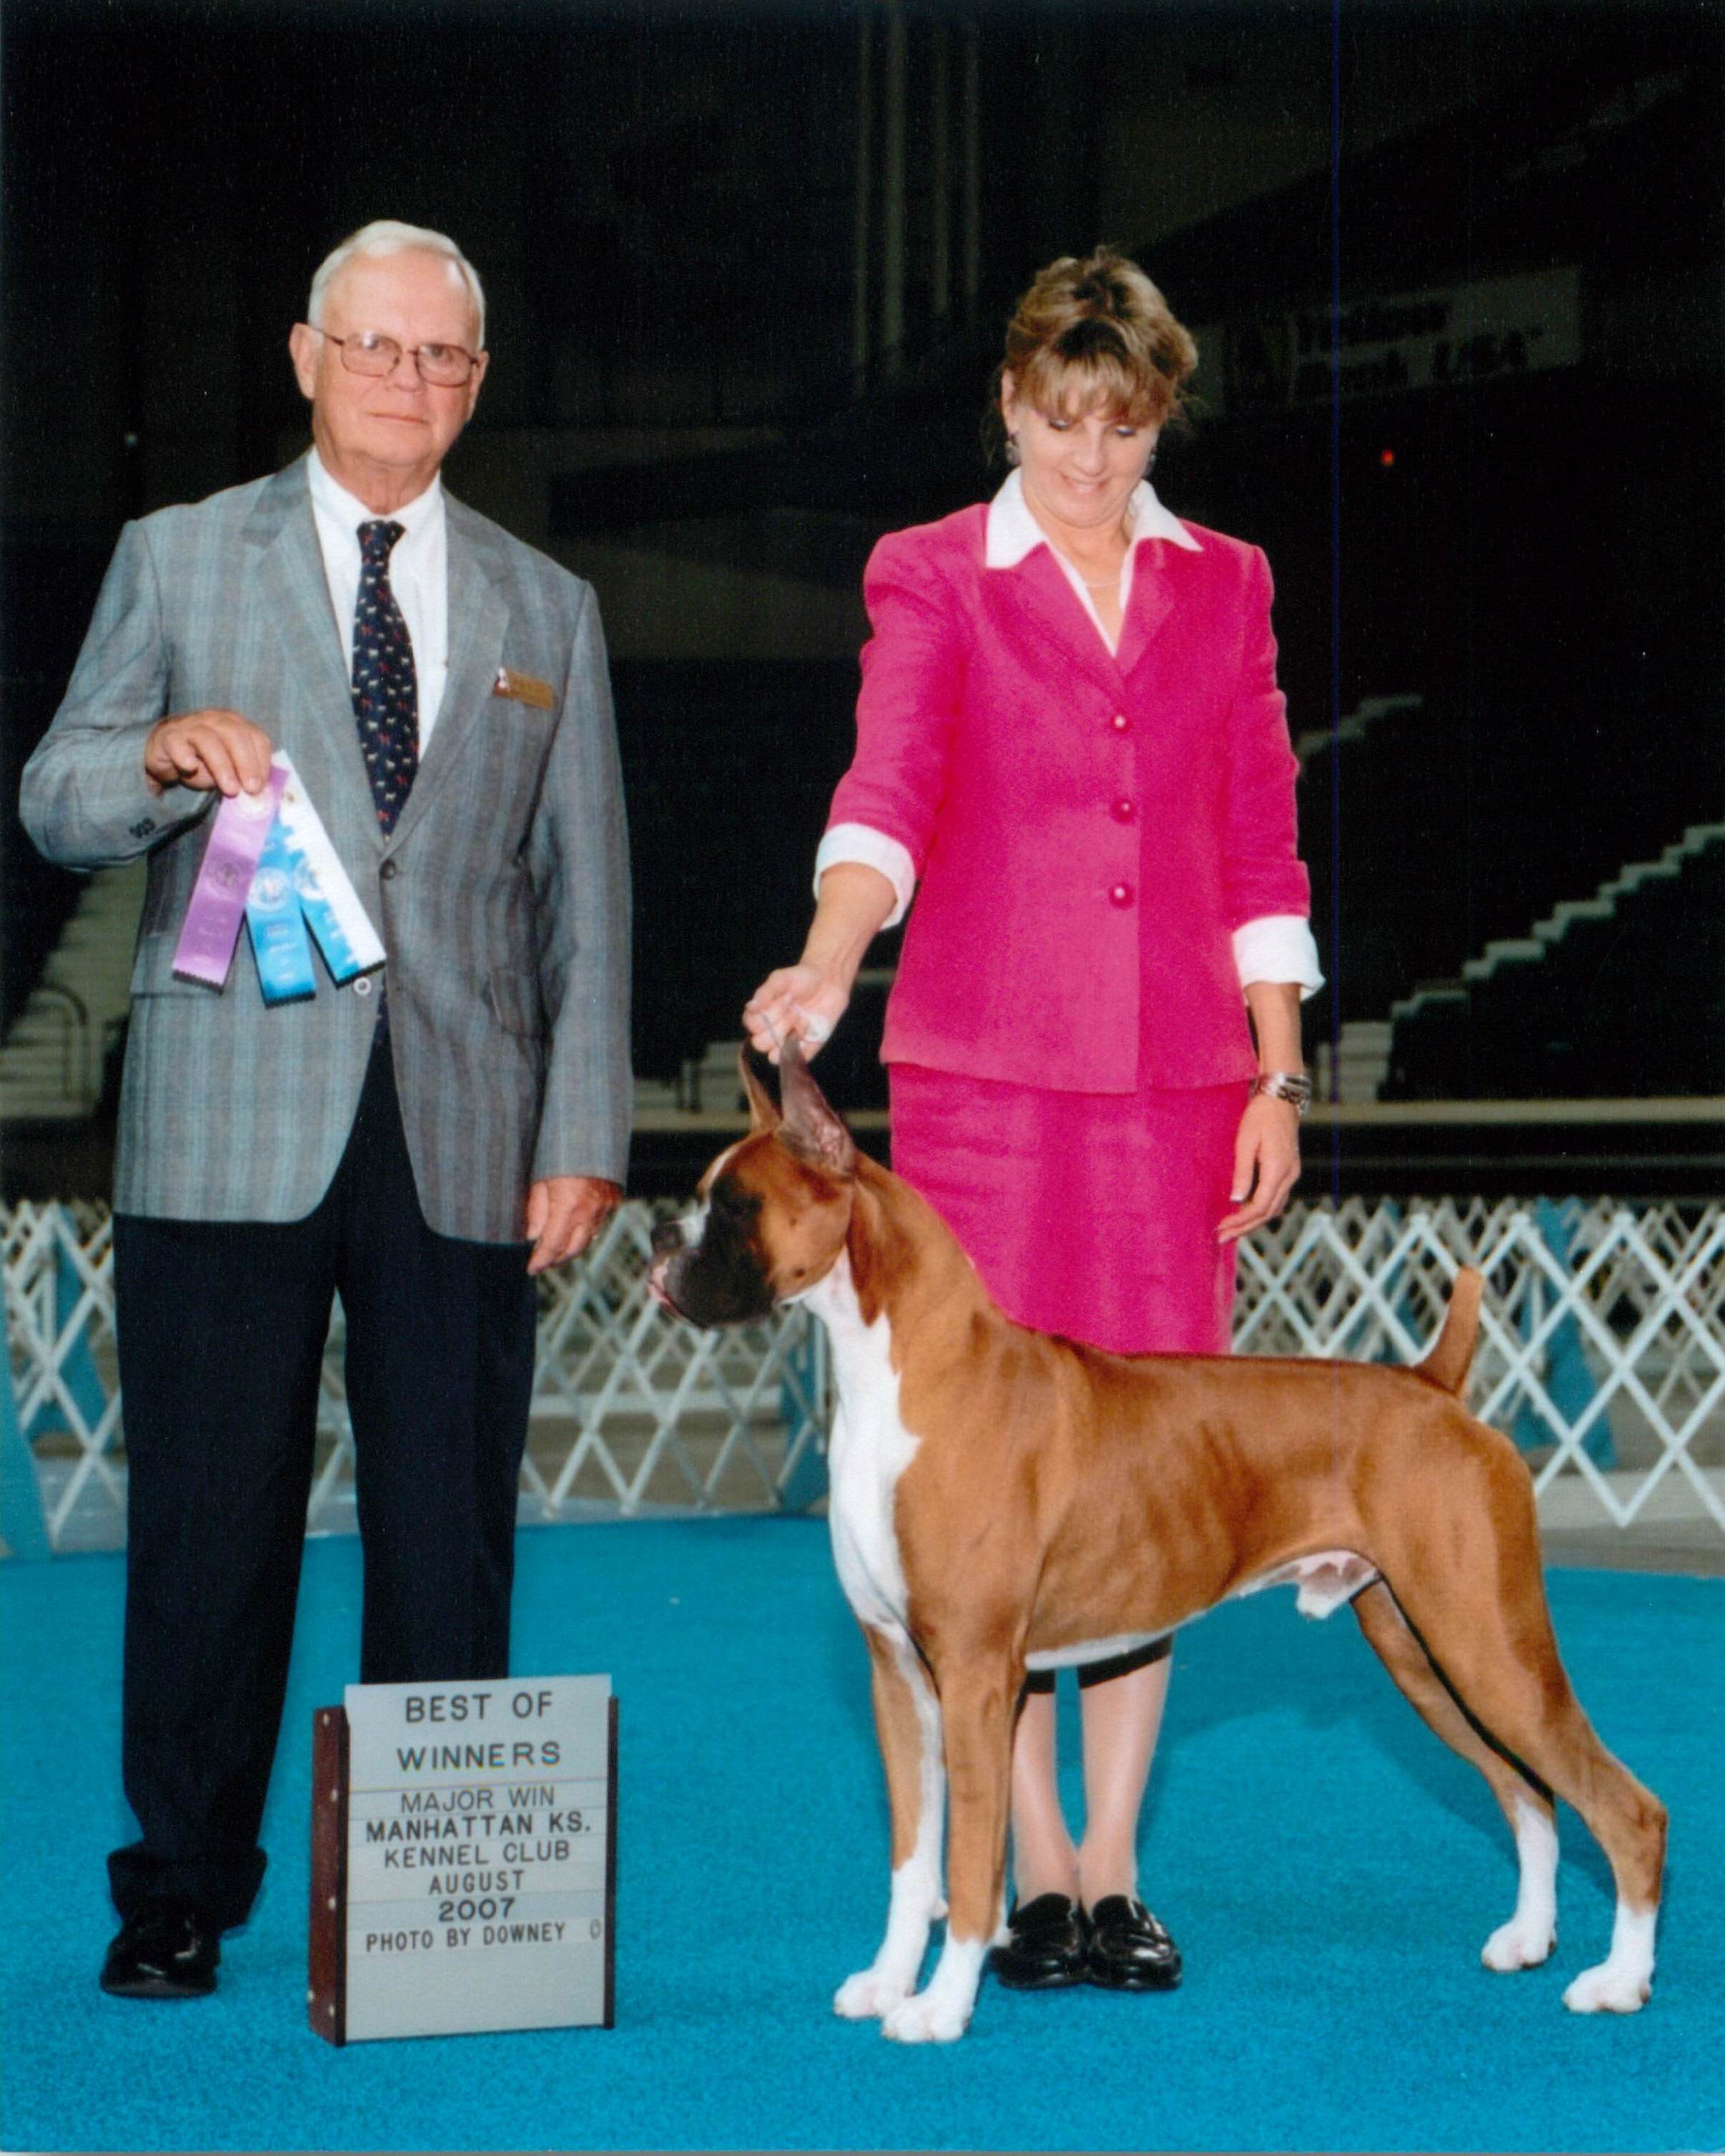 Best of Winners & Winners Dog @ 2007 Specialty Show #1